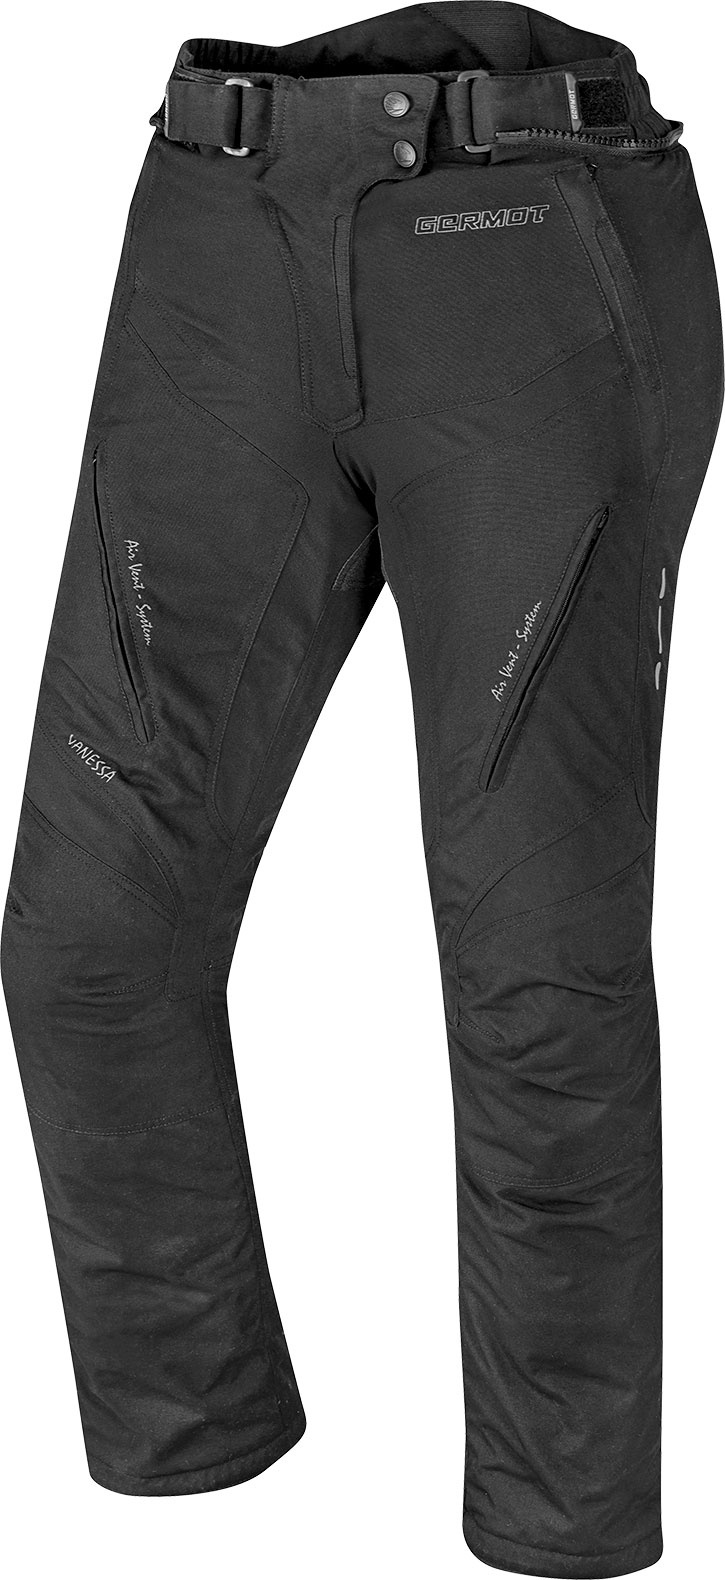 Germot Vanessa, textile Jeans/Pantalons étanches - Noir/Gris - 46